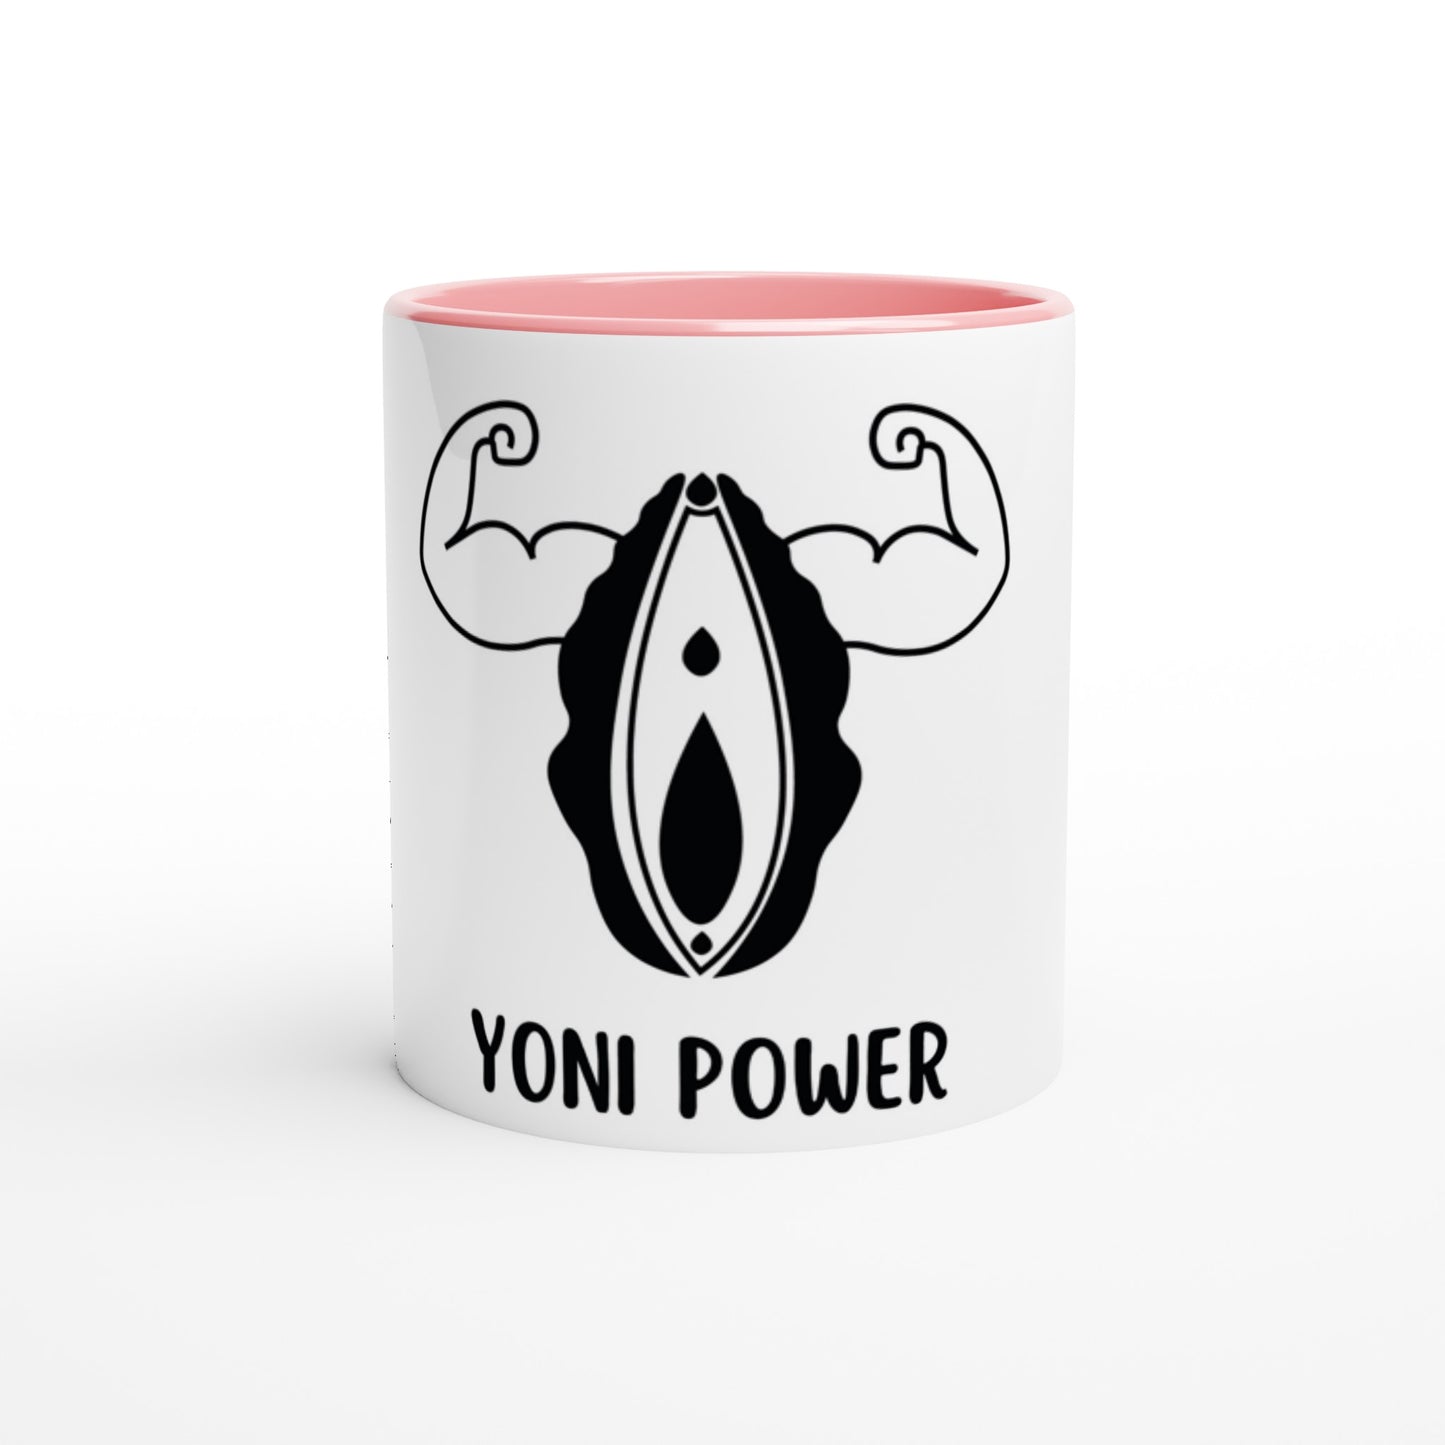 Farbige "YONI POWER"-Keramiktasse (325ml) farbiger Henkel, Rand, Innenbereich, Kaffeetasse Teetasse Yonitasse Keramikbecher 🌸 Yoni Motiv Yoniart Yoni Art